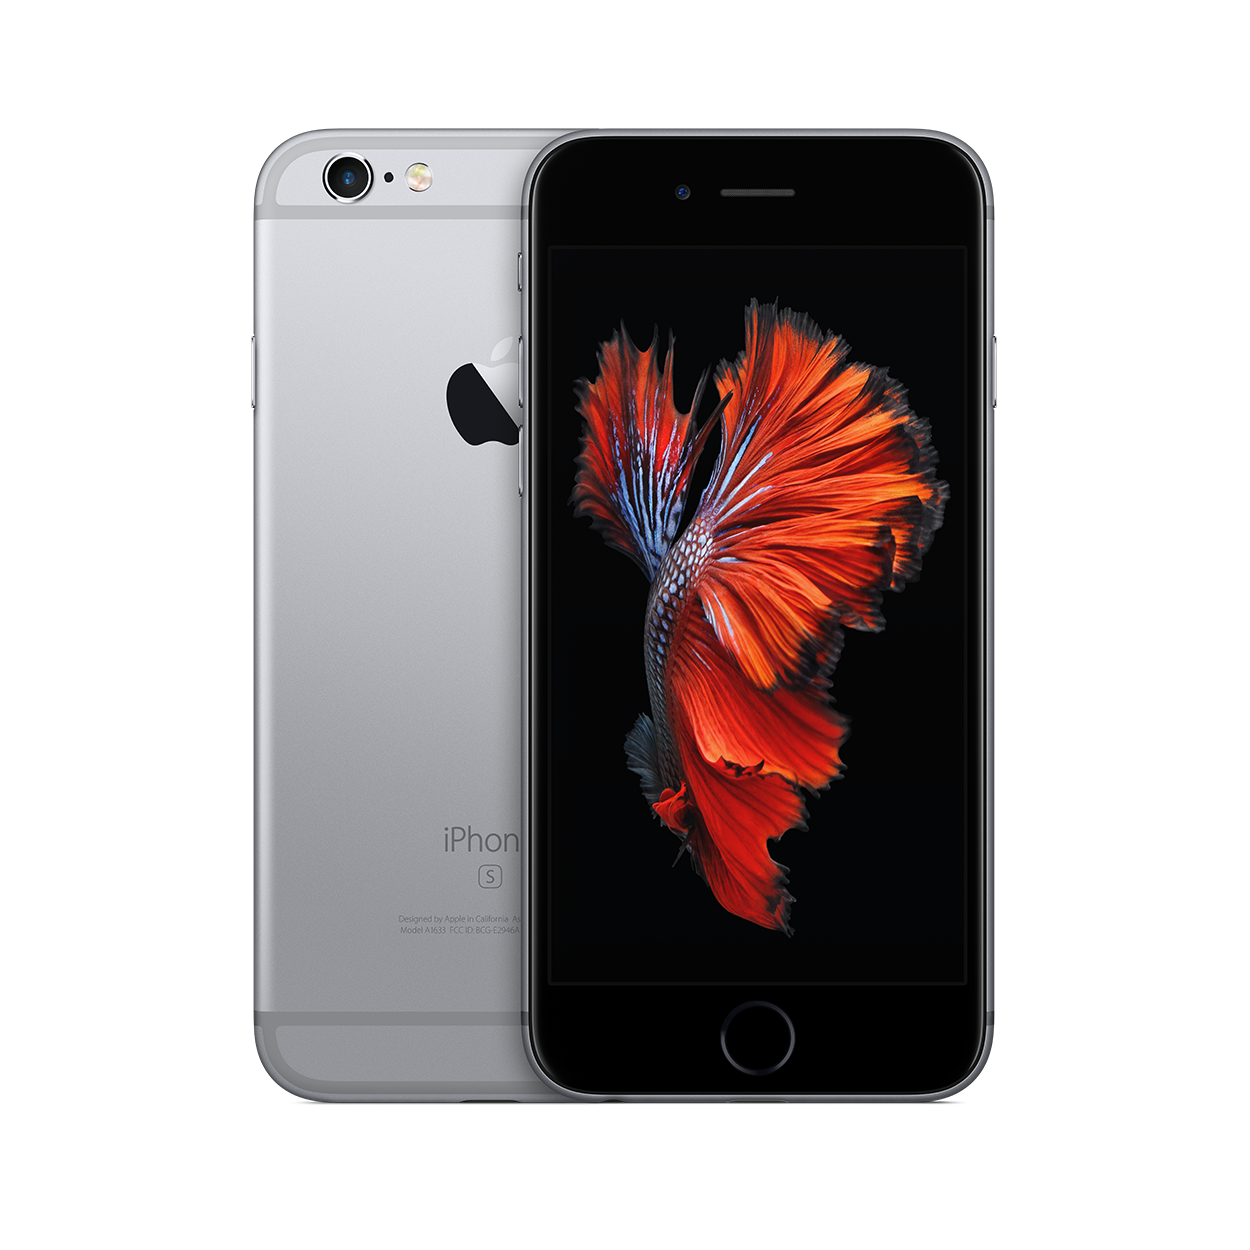 Tutto sui nuovi iPhone 6s e iPhone 6s Plus - Wired